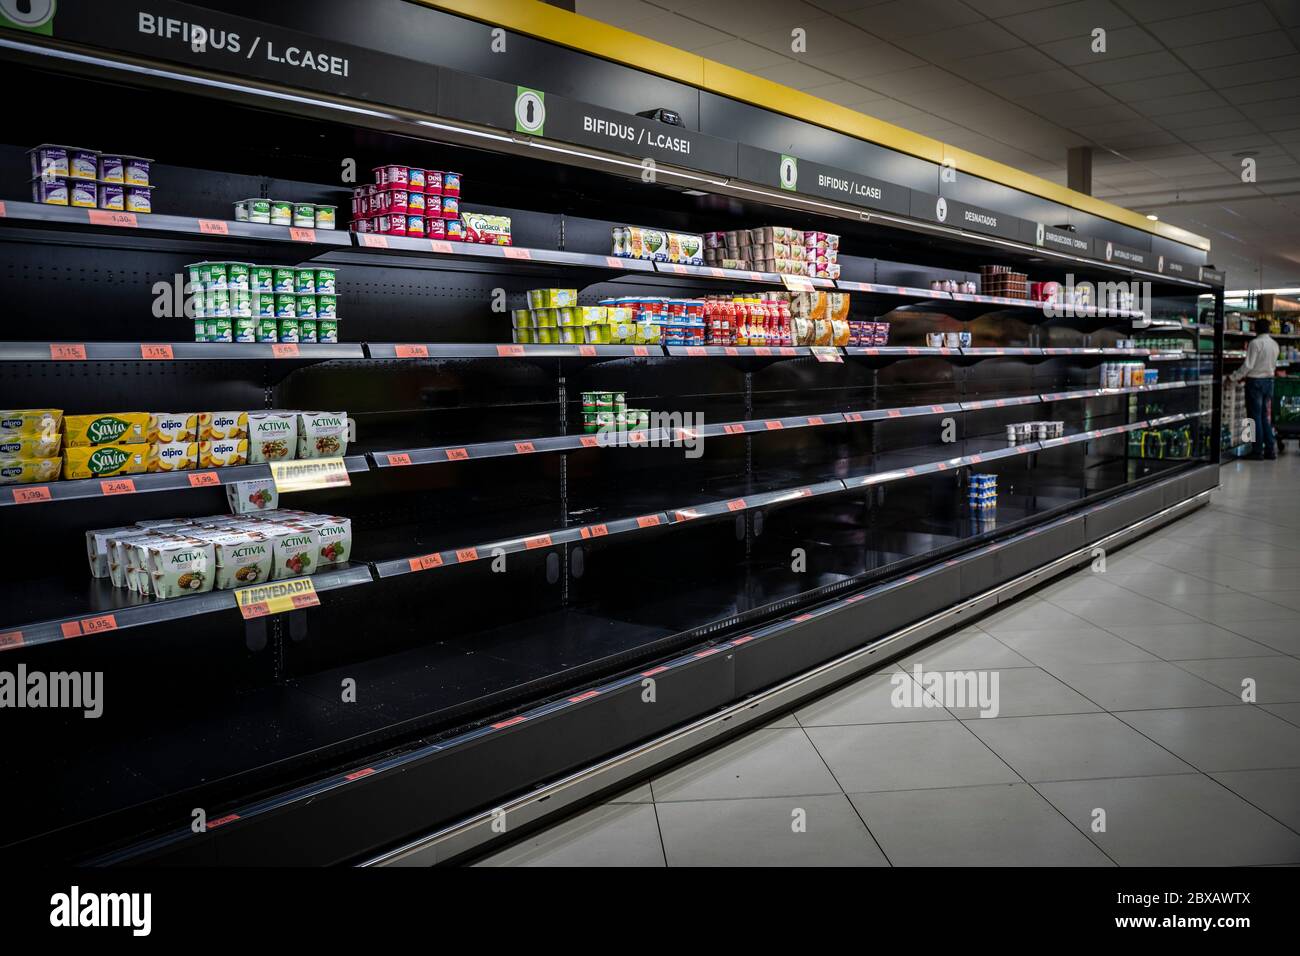 COVID-19. Supermarché vide en raison de l'achat panique. Manque de nourriture et de fournitures de base sur les tablettes. Malaga, Espagne - 12 mars 2020. Banque D'Images